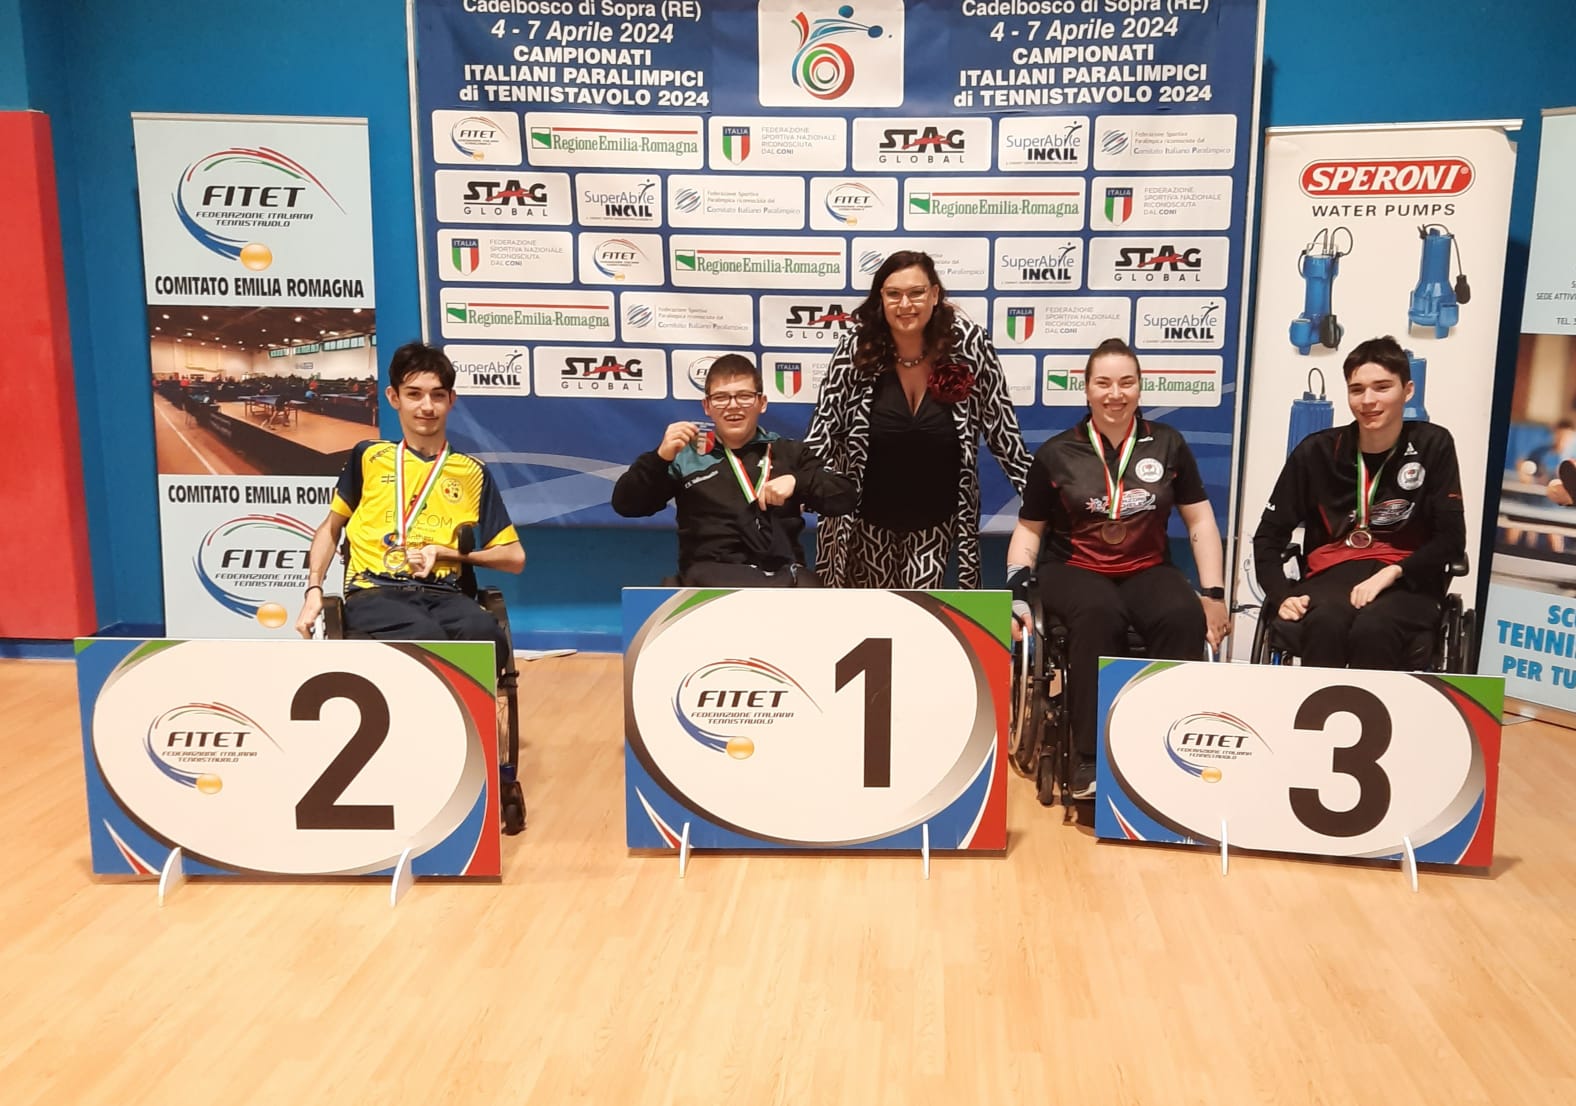 Campionati Italiani Paralimpici di Cadelbosco 2024 podio del singolare maschile giovanile di classe 1 5